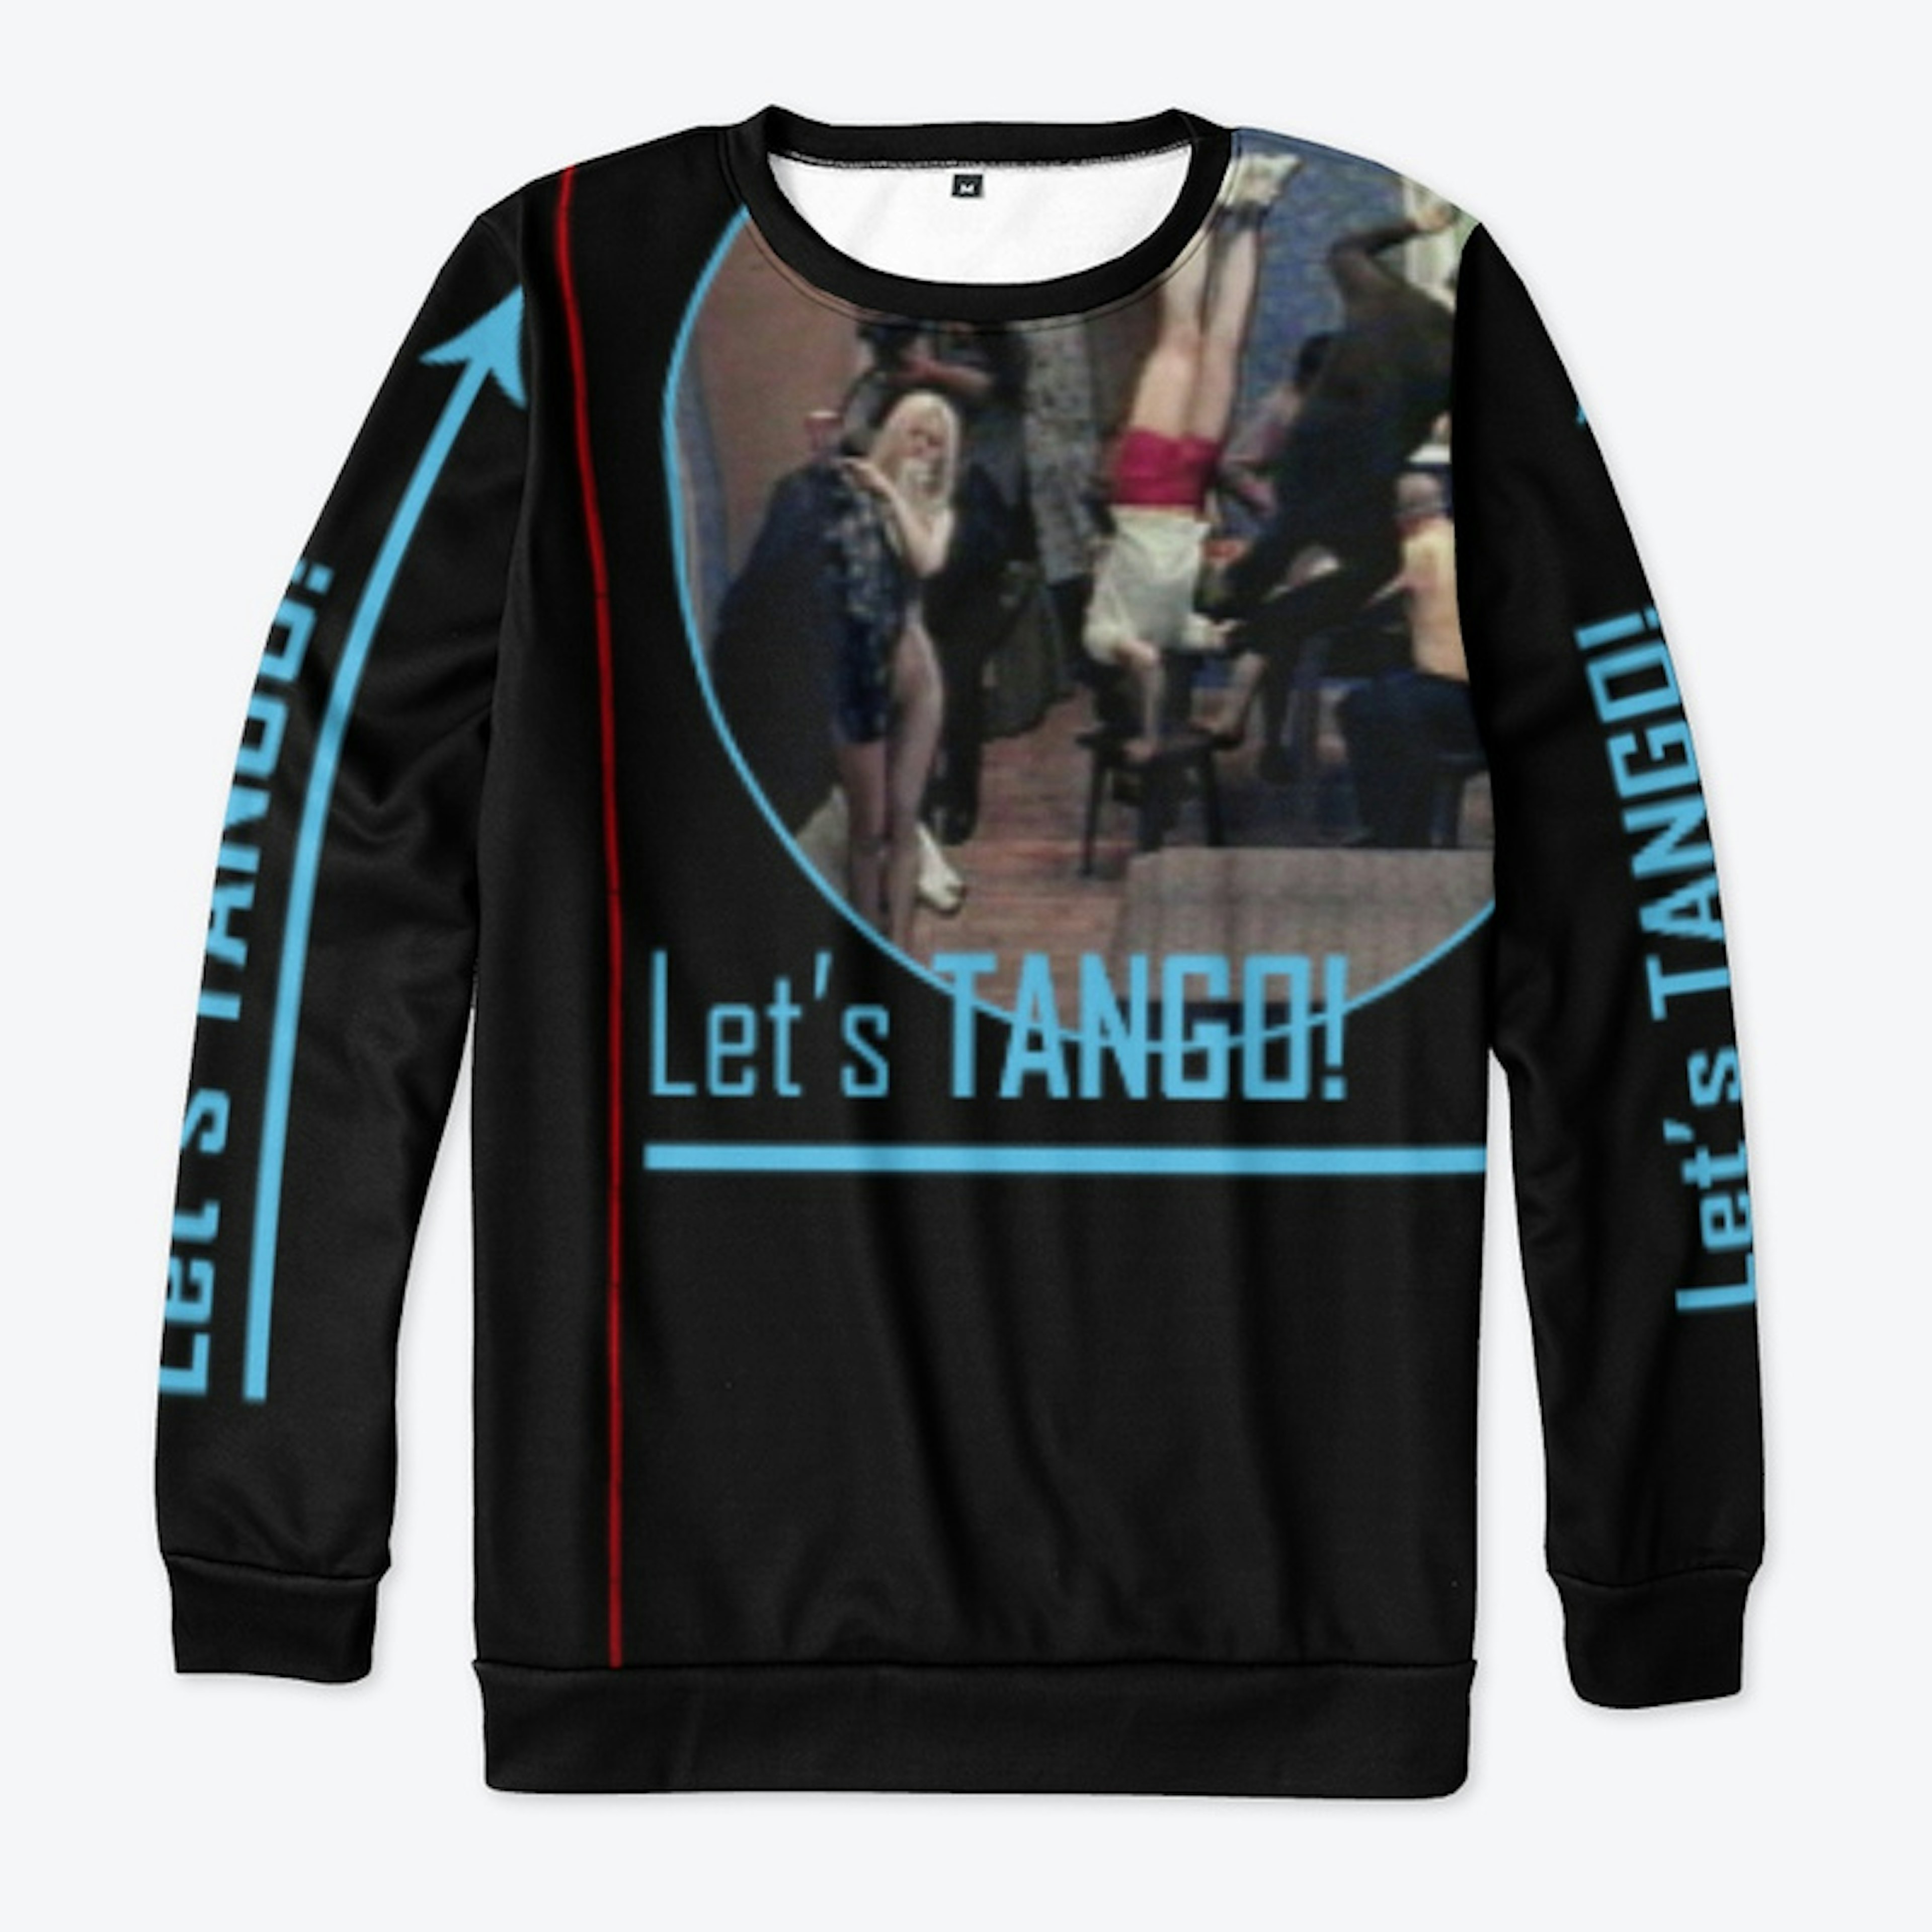 Tango T-Shirt